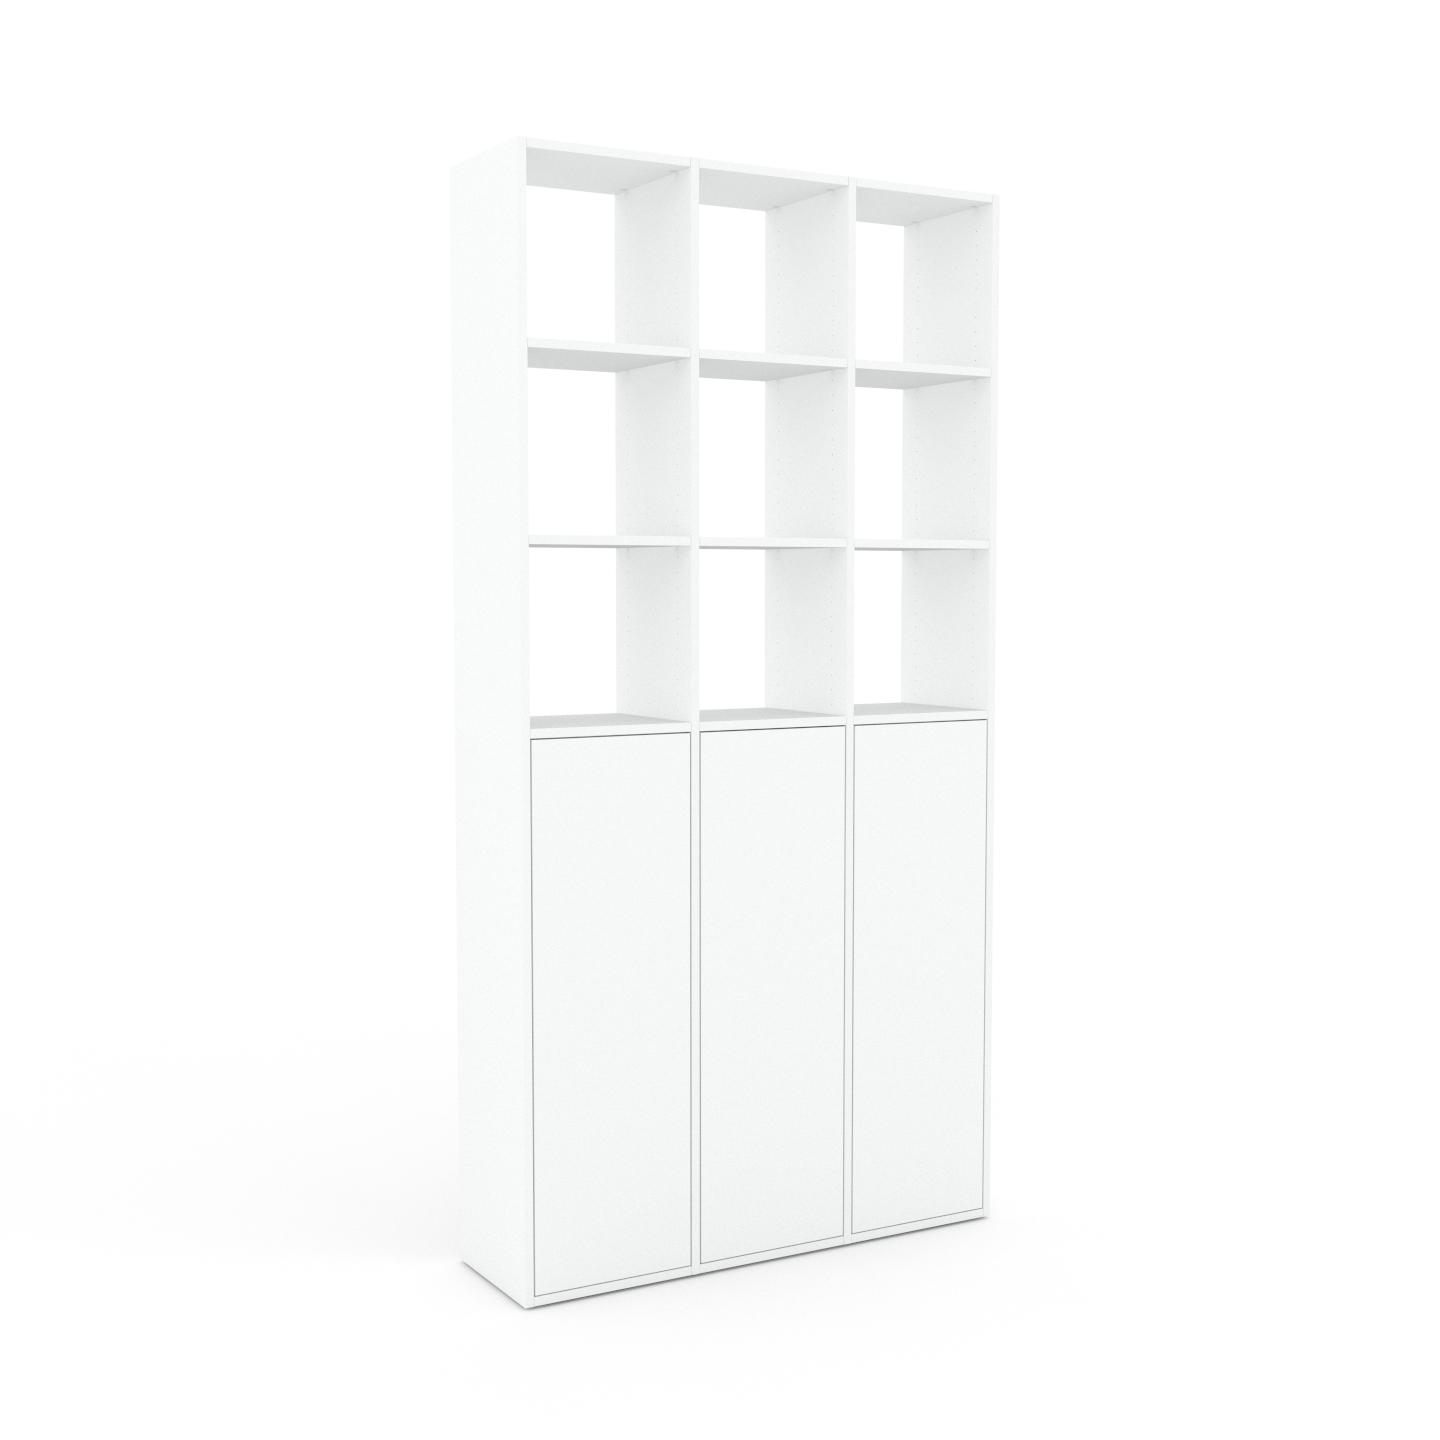 MYCS Bücherregal Weiß - Modernes Regal für Bücher: Türen in Weiß - 118 x 233 x 35 cm, Individuell konfigurierbar